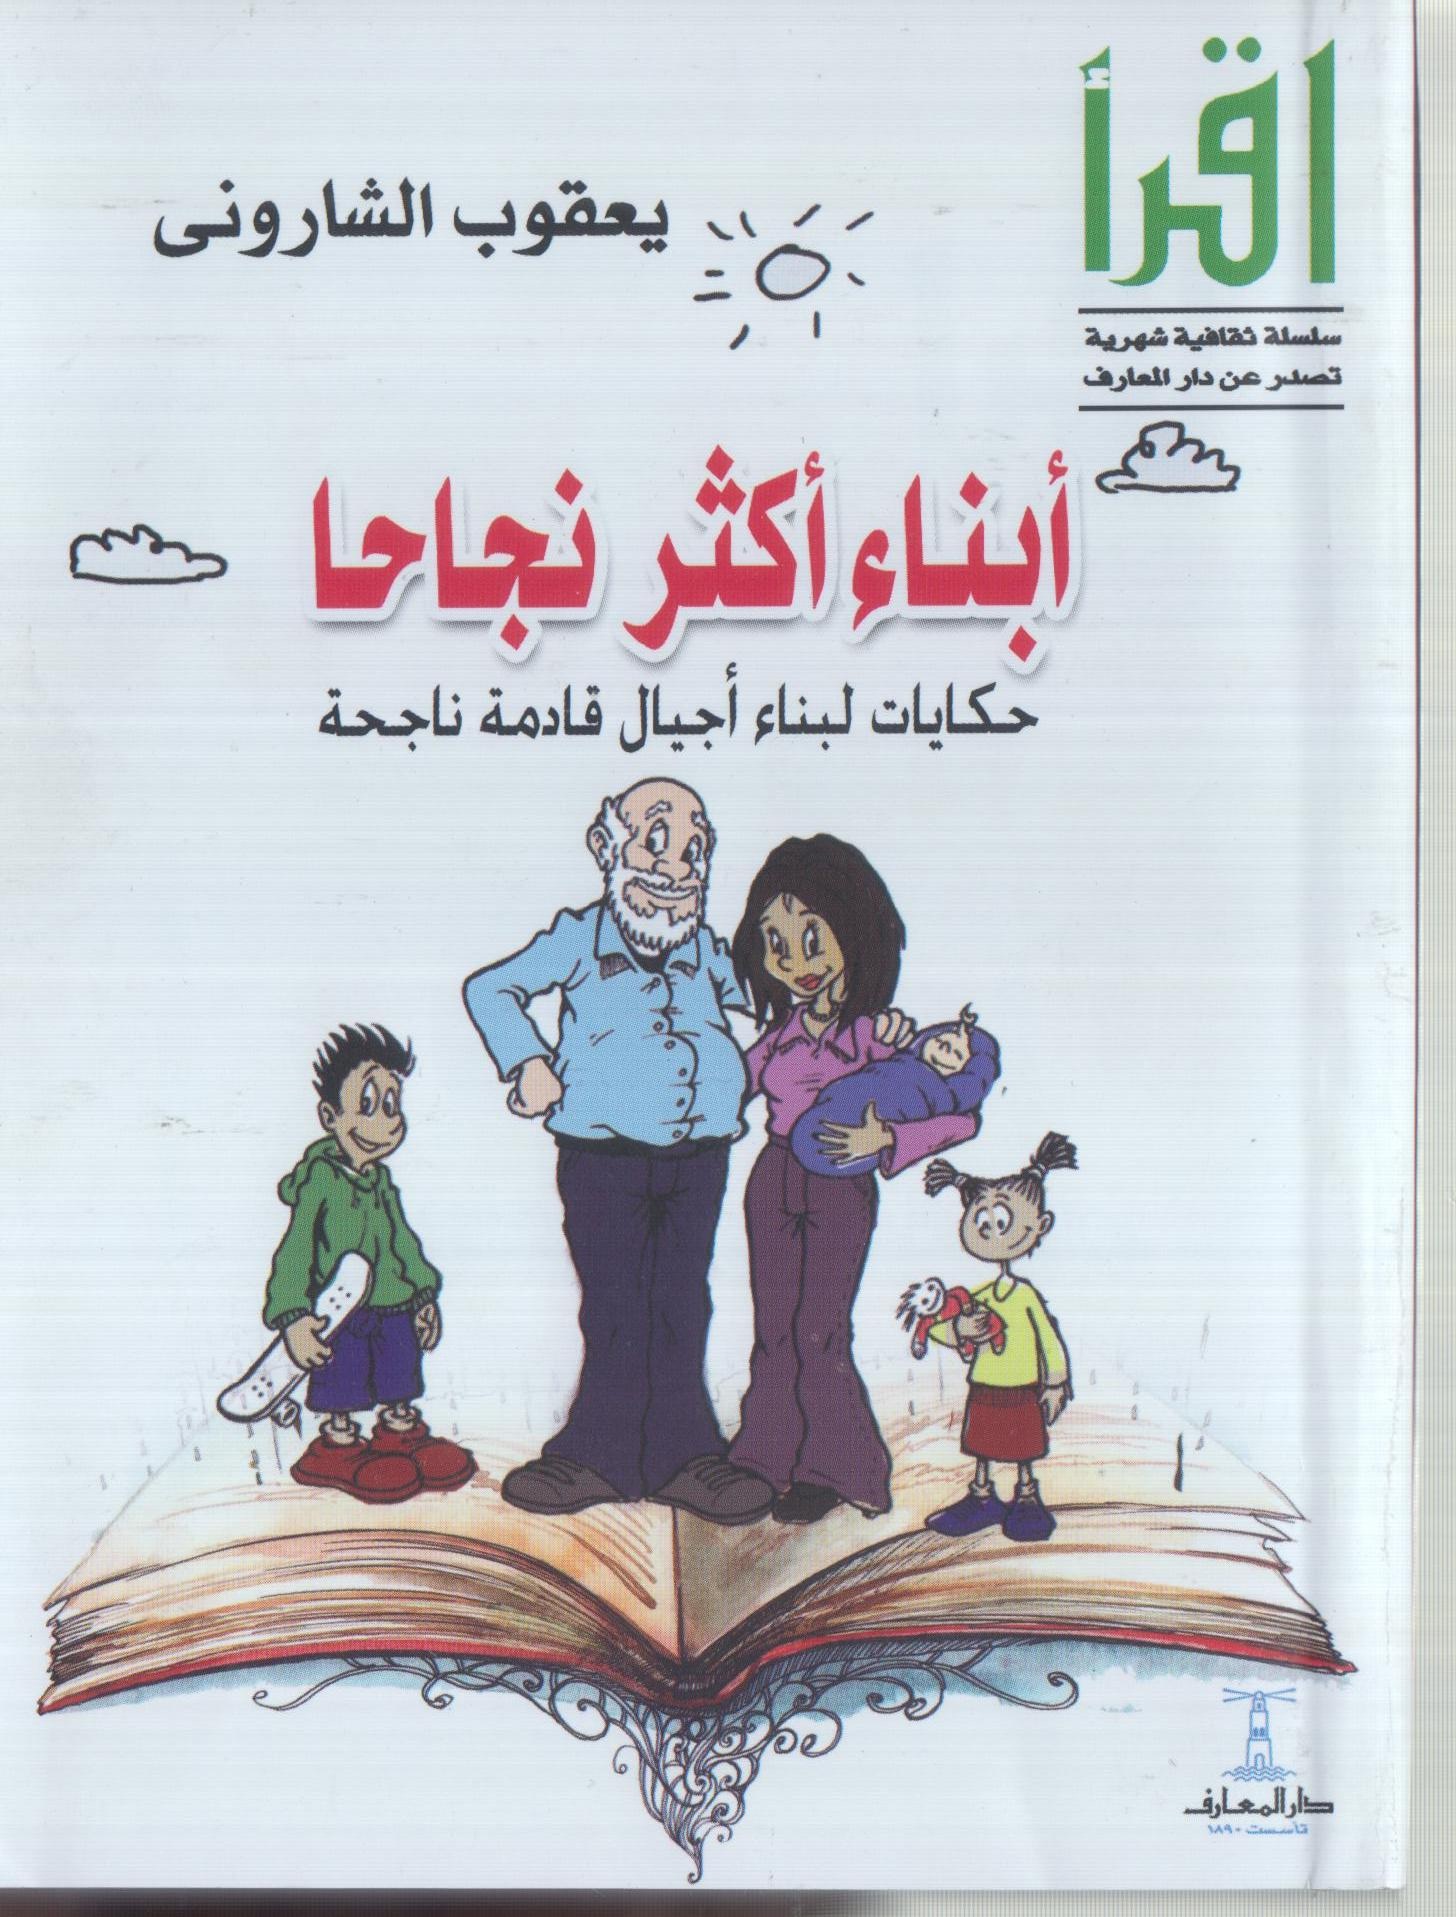 فى معرض القاهرة الدولى للكتاب  الشارونى و " أبناء أكثر نجاحًا " 